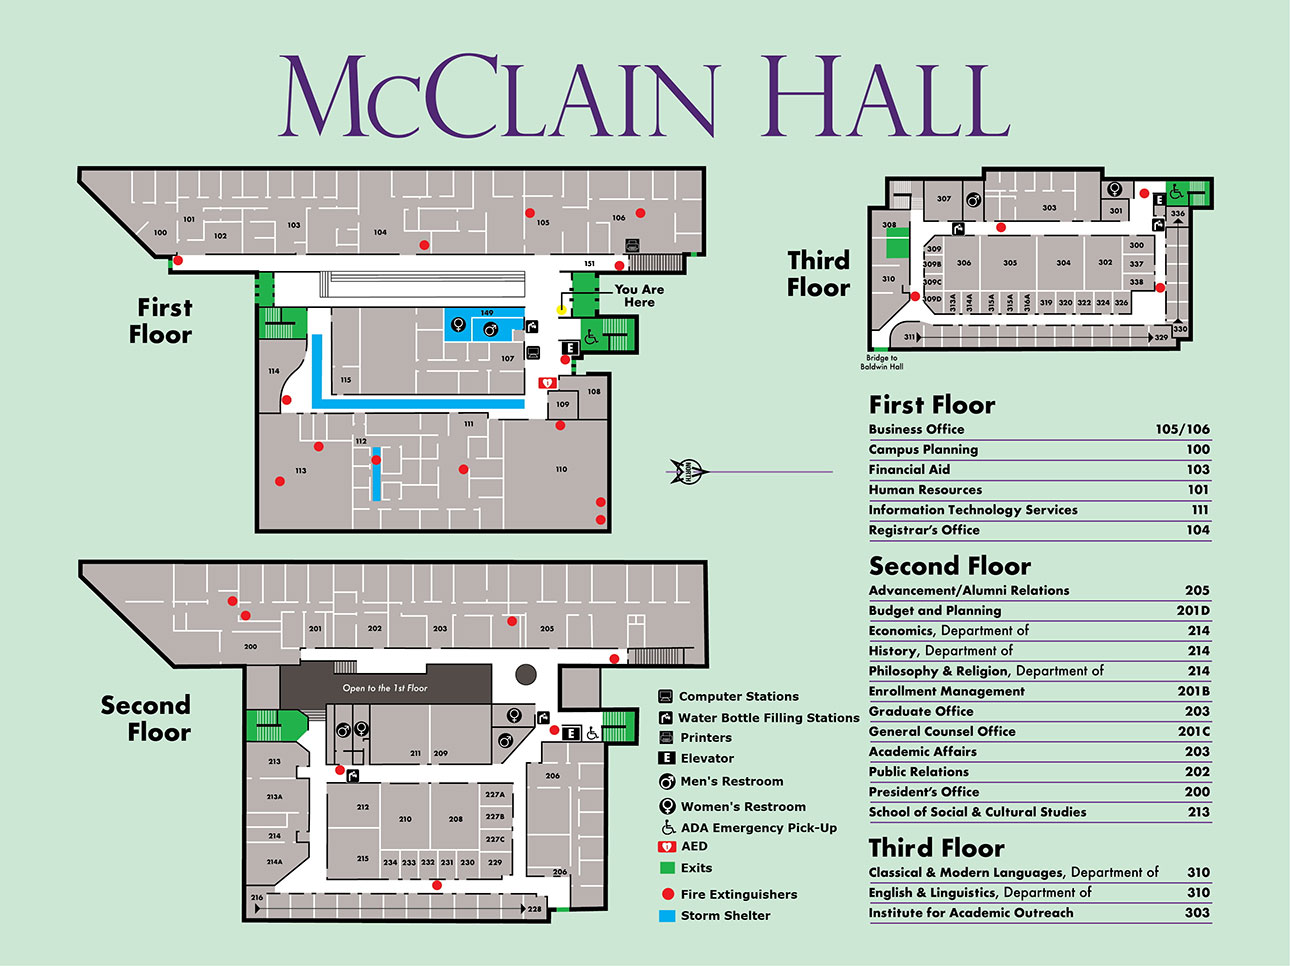 McClain Hall Floor Plans